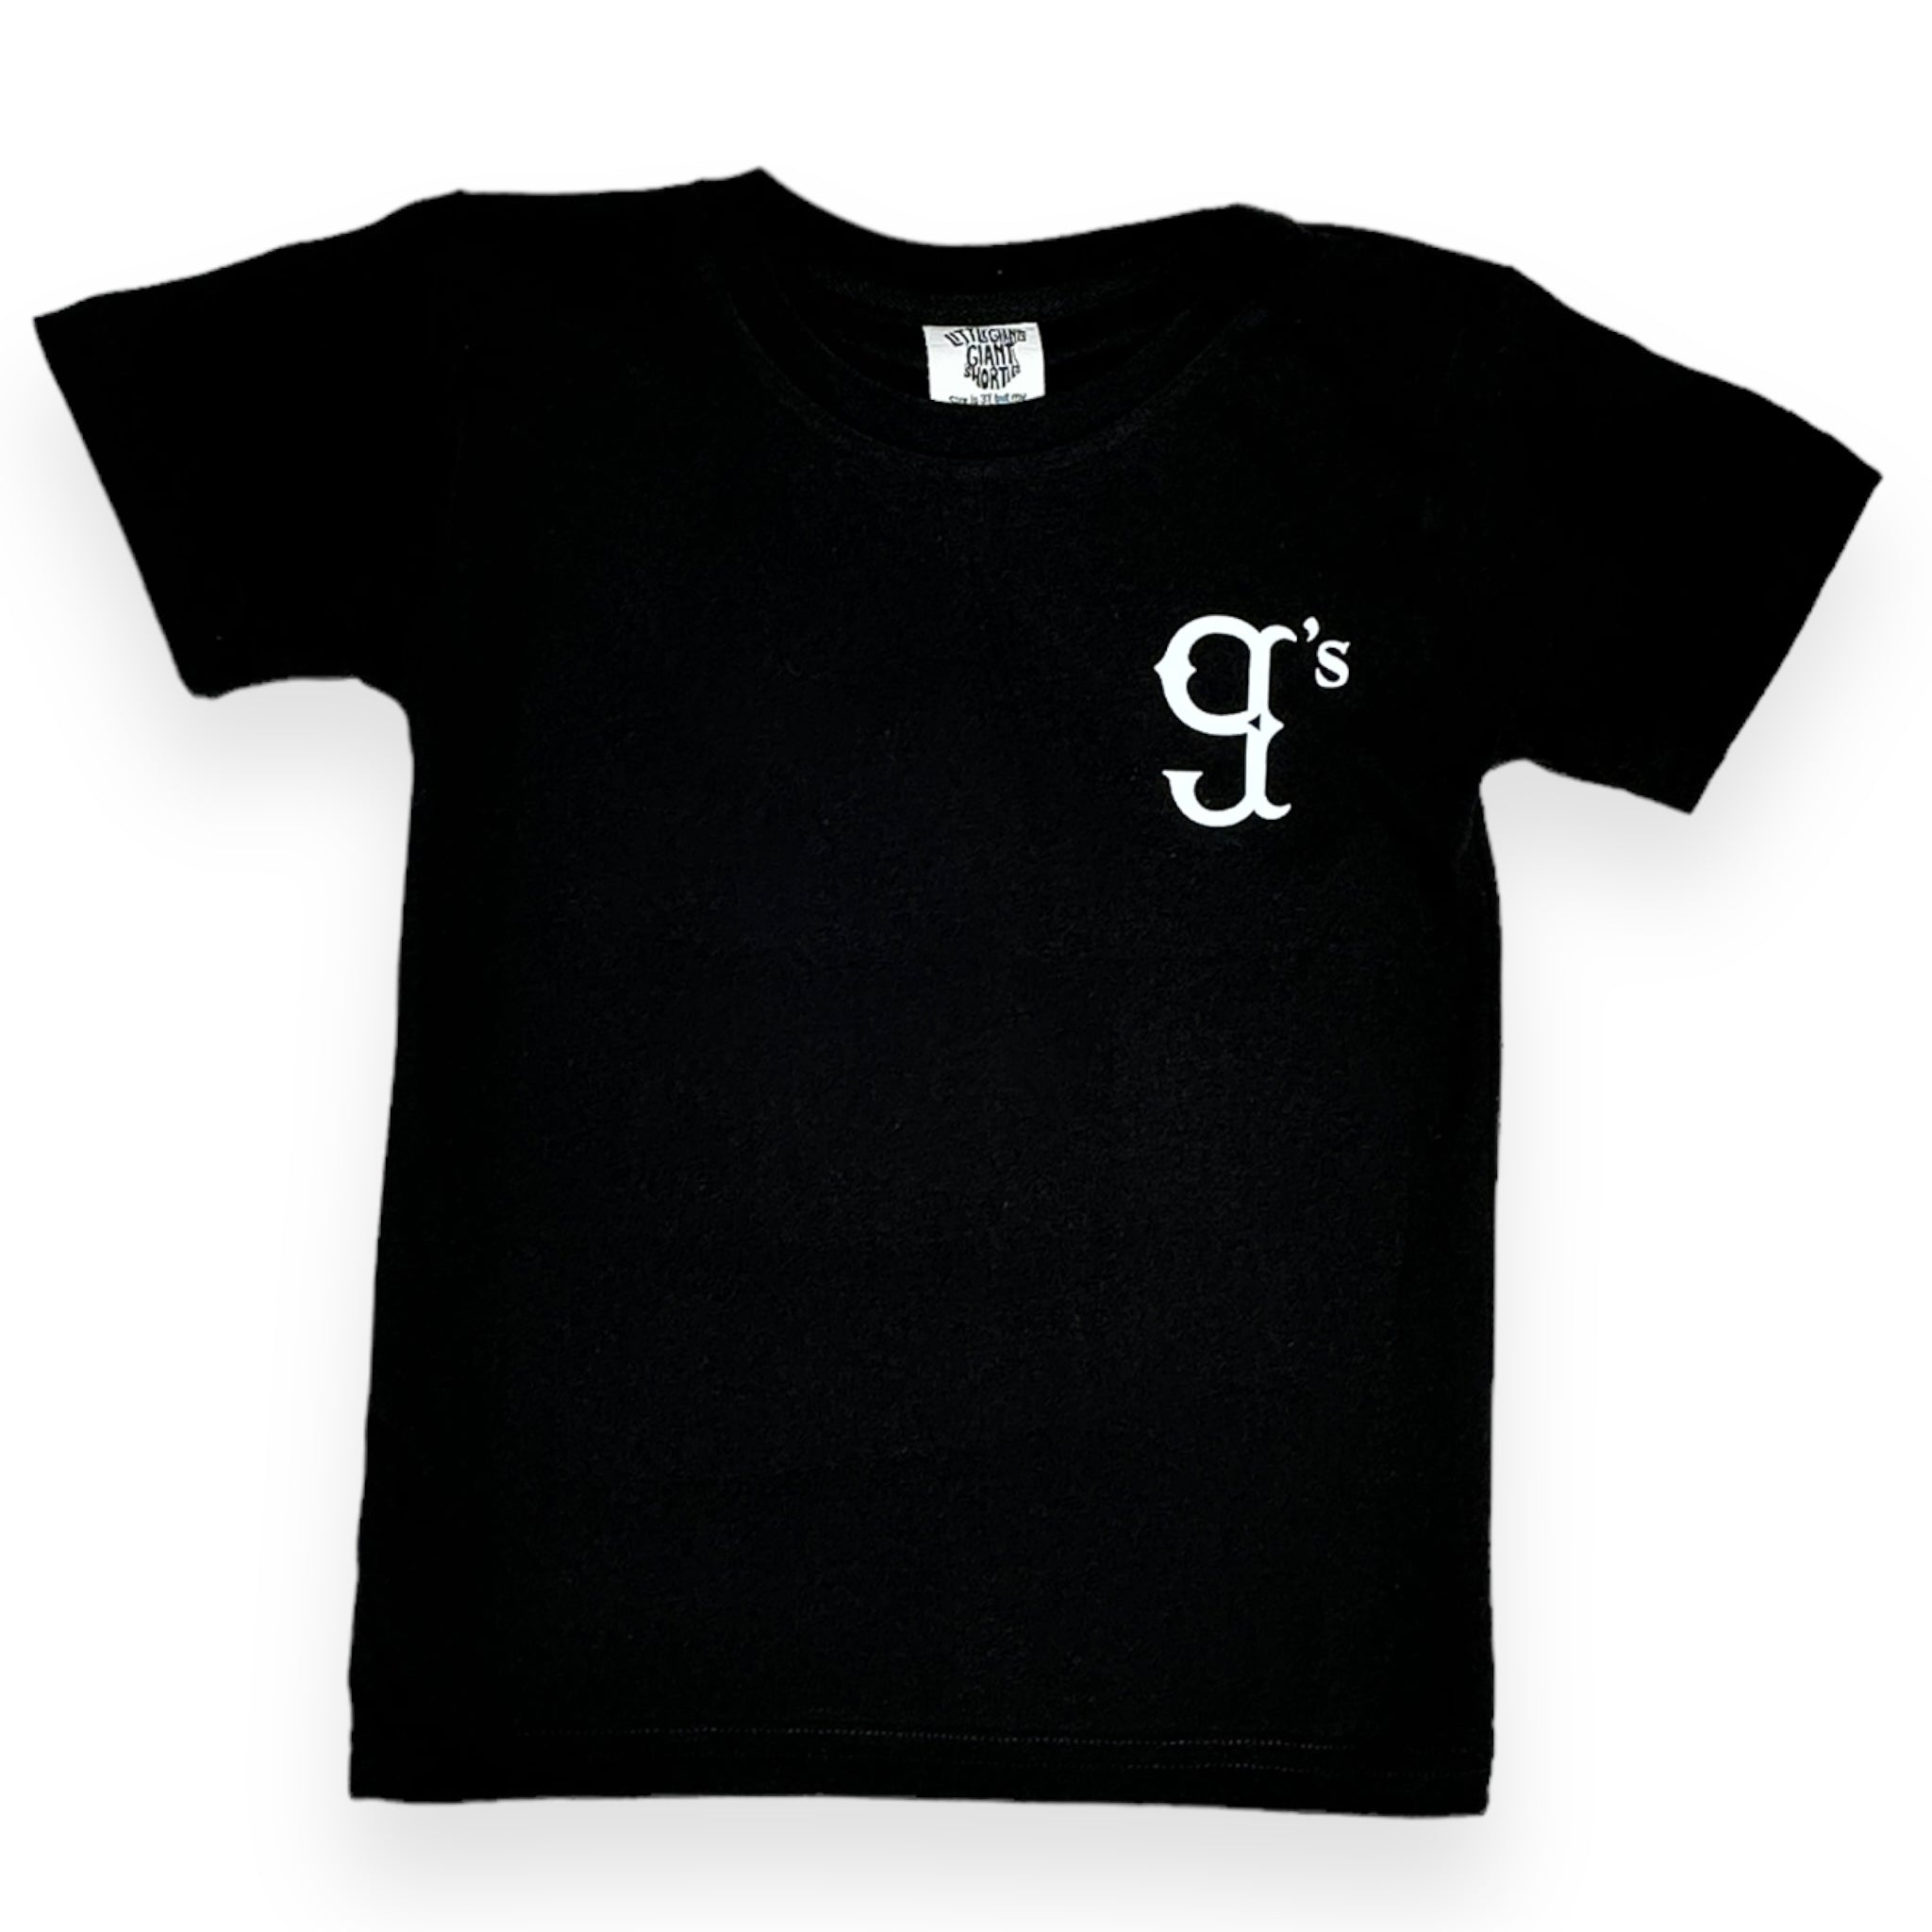 BK Little g's T-shirt (Black)